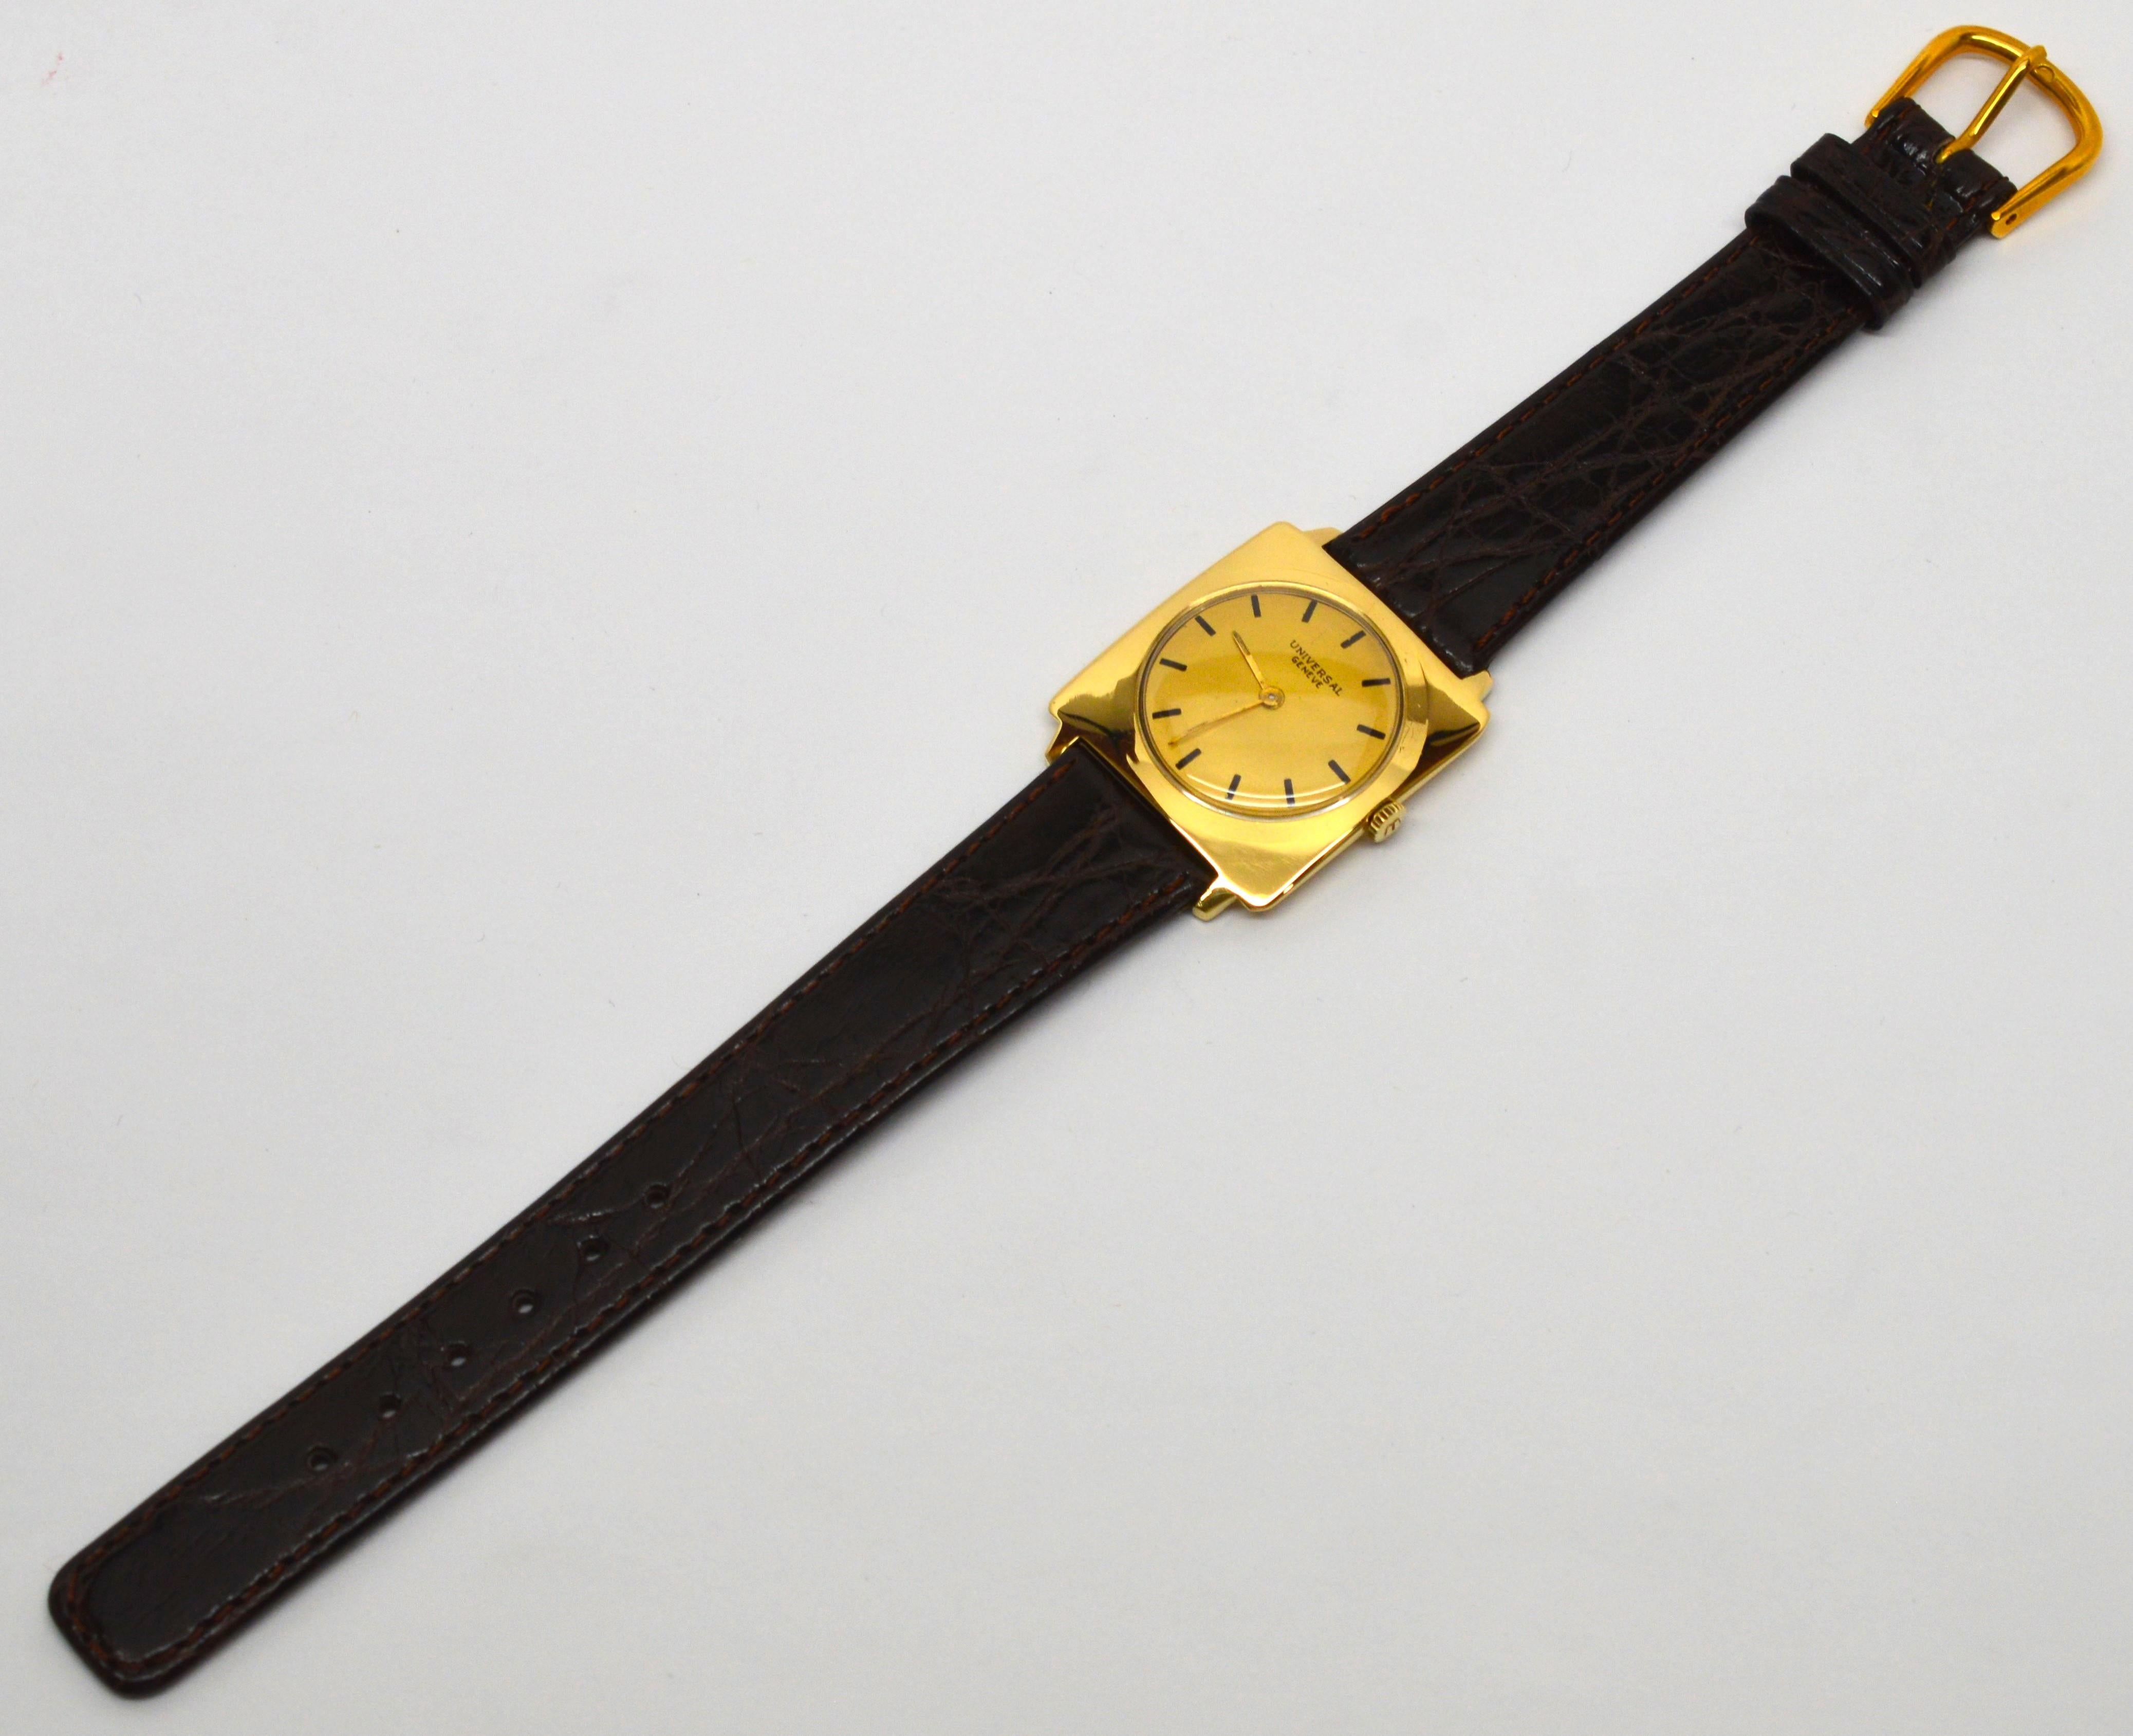 Avec son boîtier carré en or jaune 18 carats, cette montre-bracelet vintage Universal pour homme est un ajout unique à votre collection de montres. D'une élégance simple, ce modèle datant de la fin des années 40 a été conçu pour être utilisé dans le